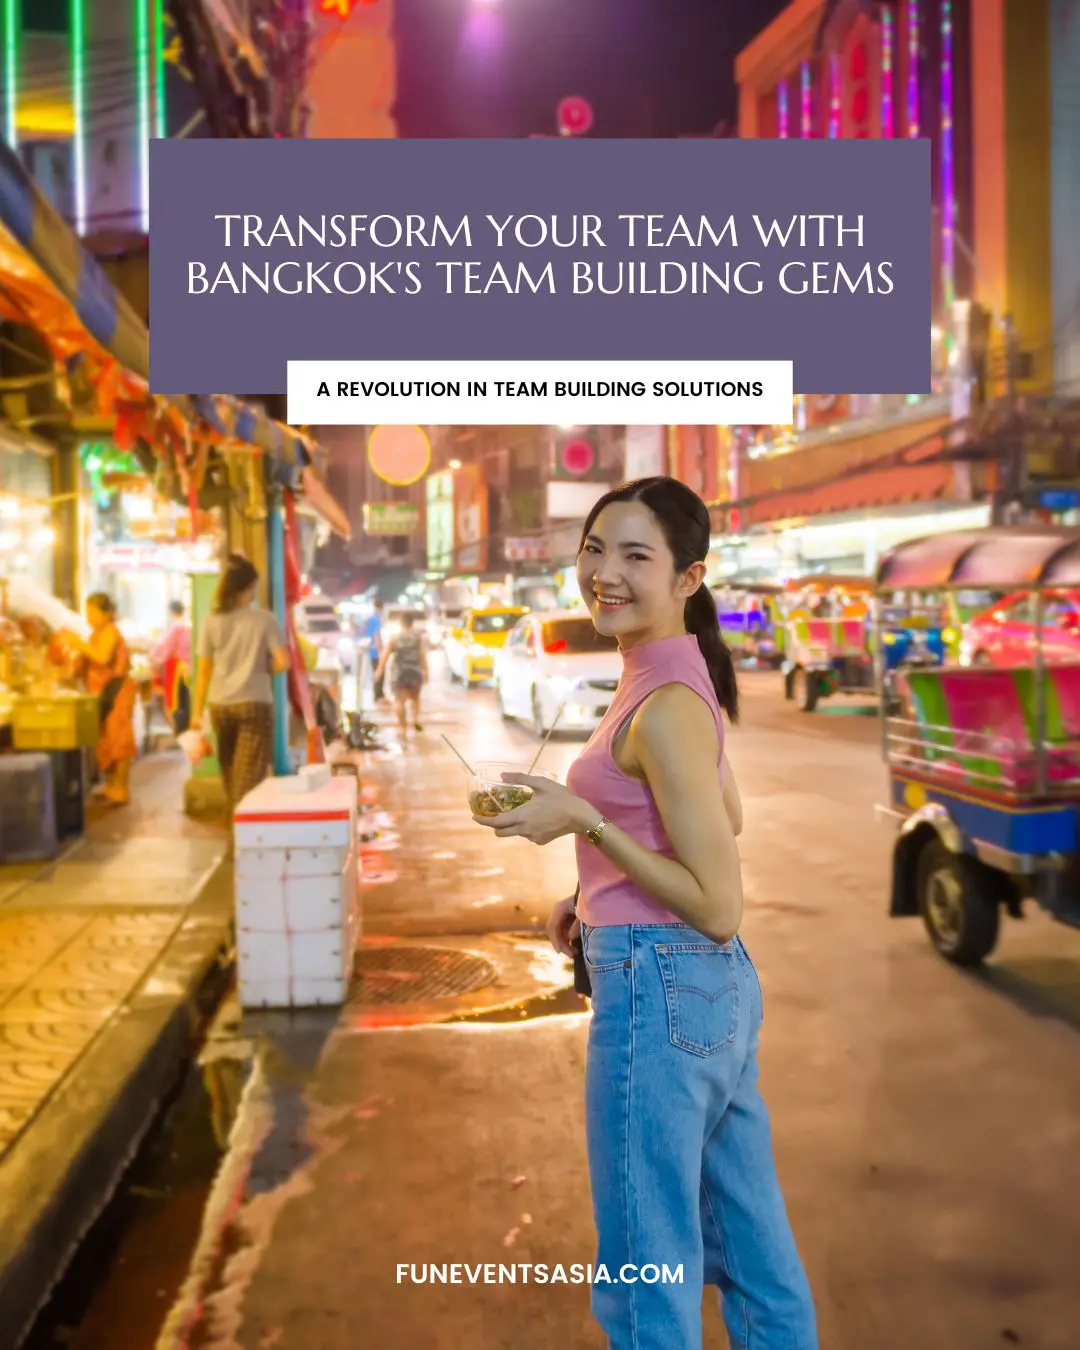 Transform Your Team with Bangkok's Team Building Gems